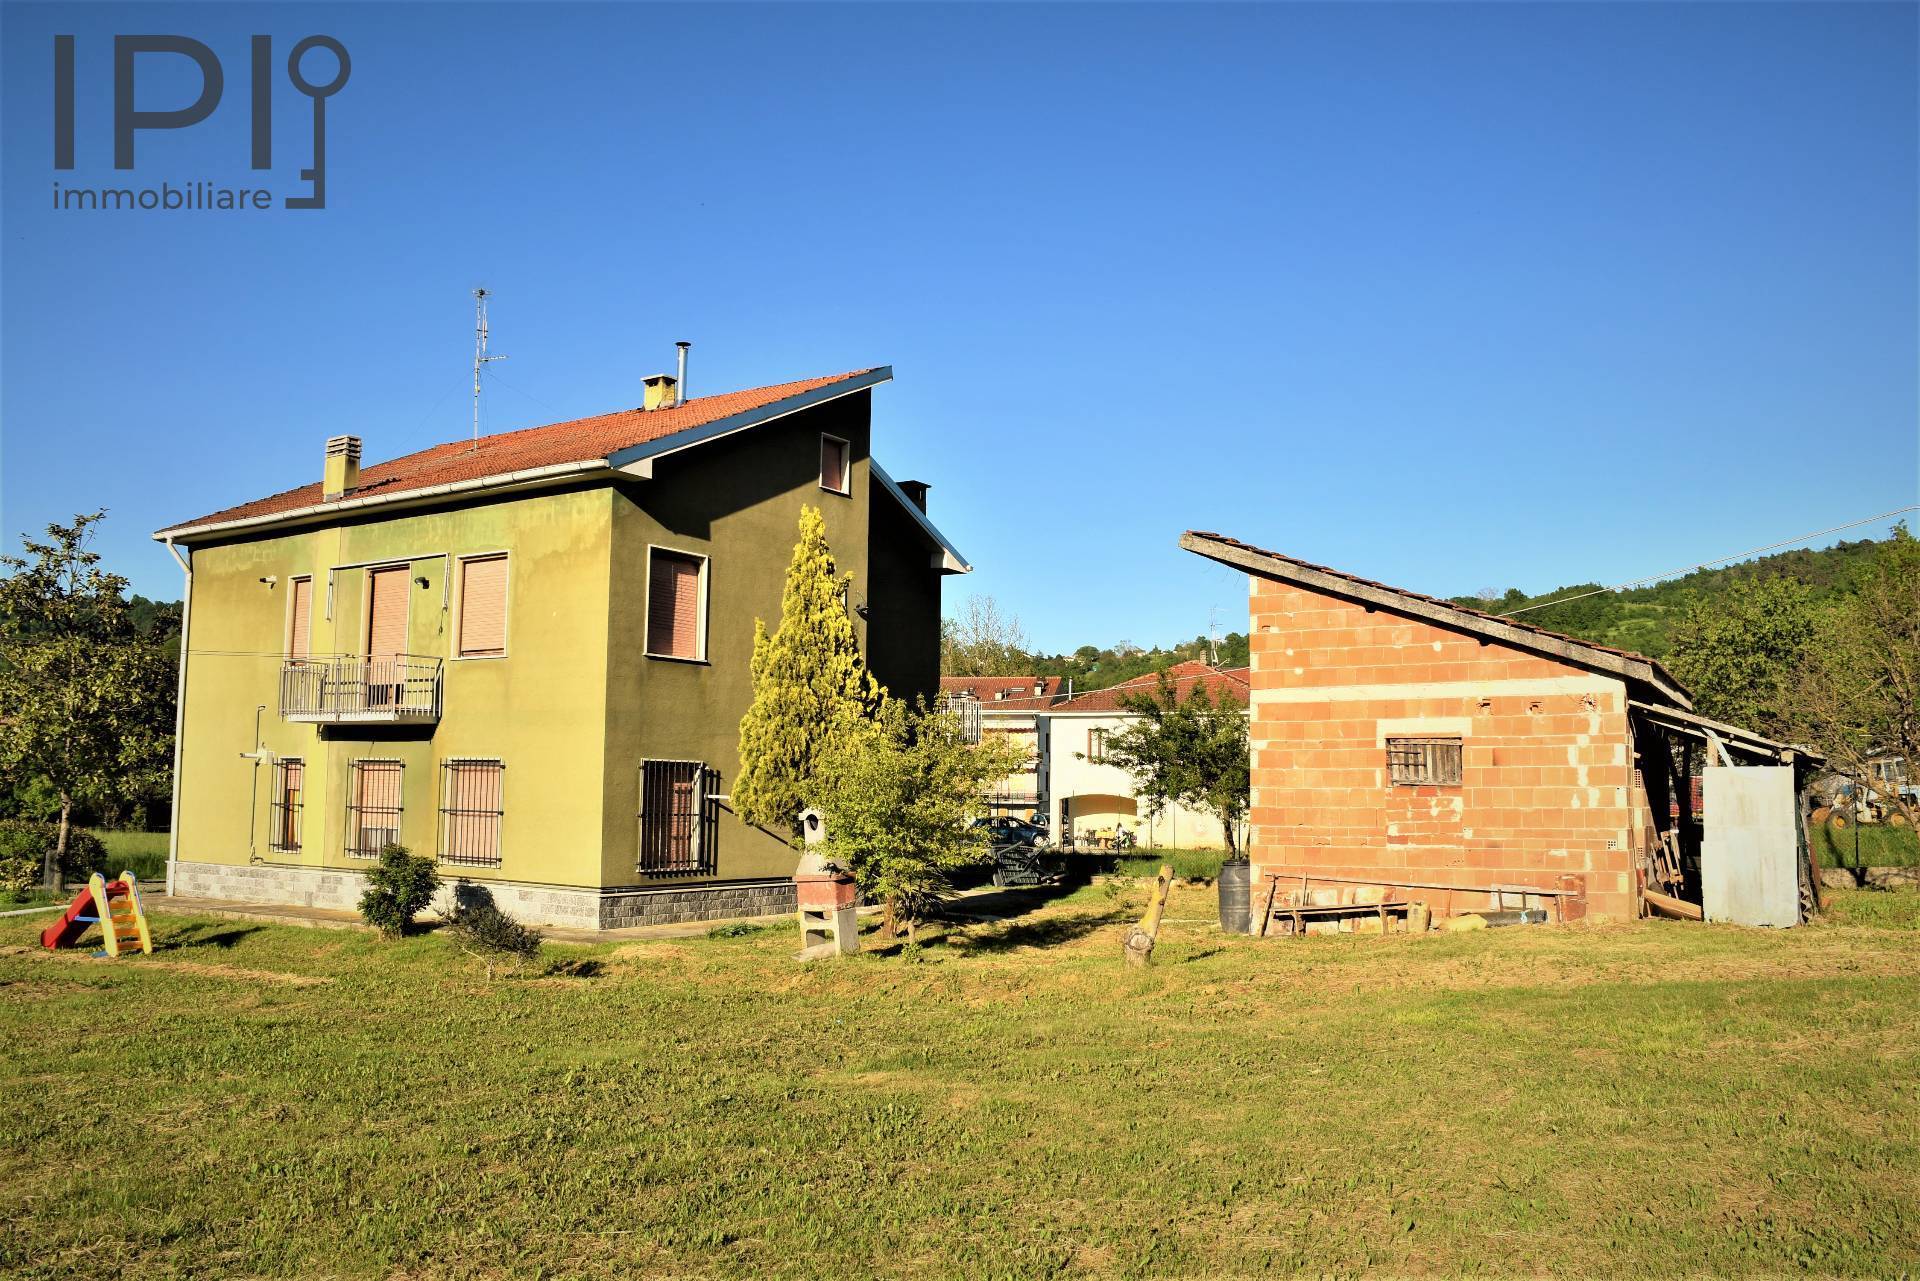 Villa in vendita a Dego, 8 locali, prezzo € 170.000 | PortaleAgenzieImmobiliari.it